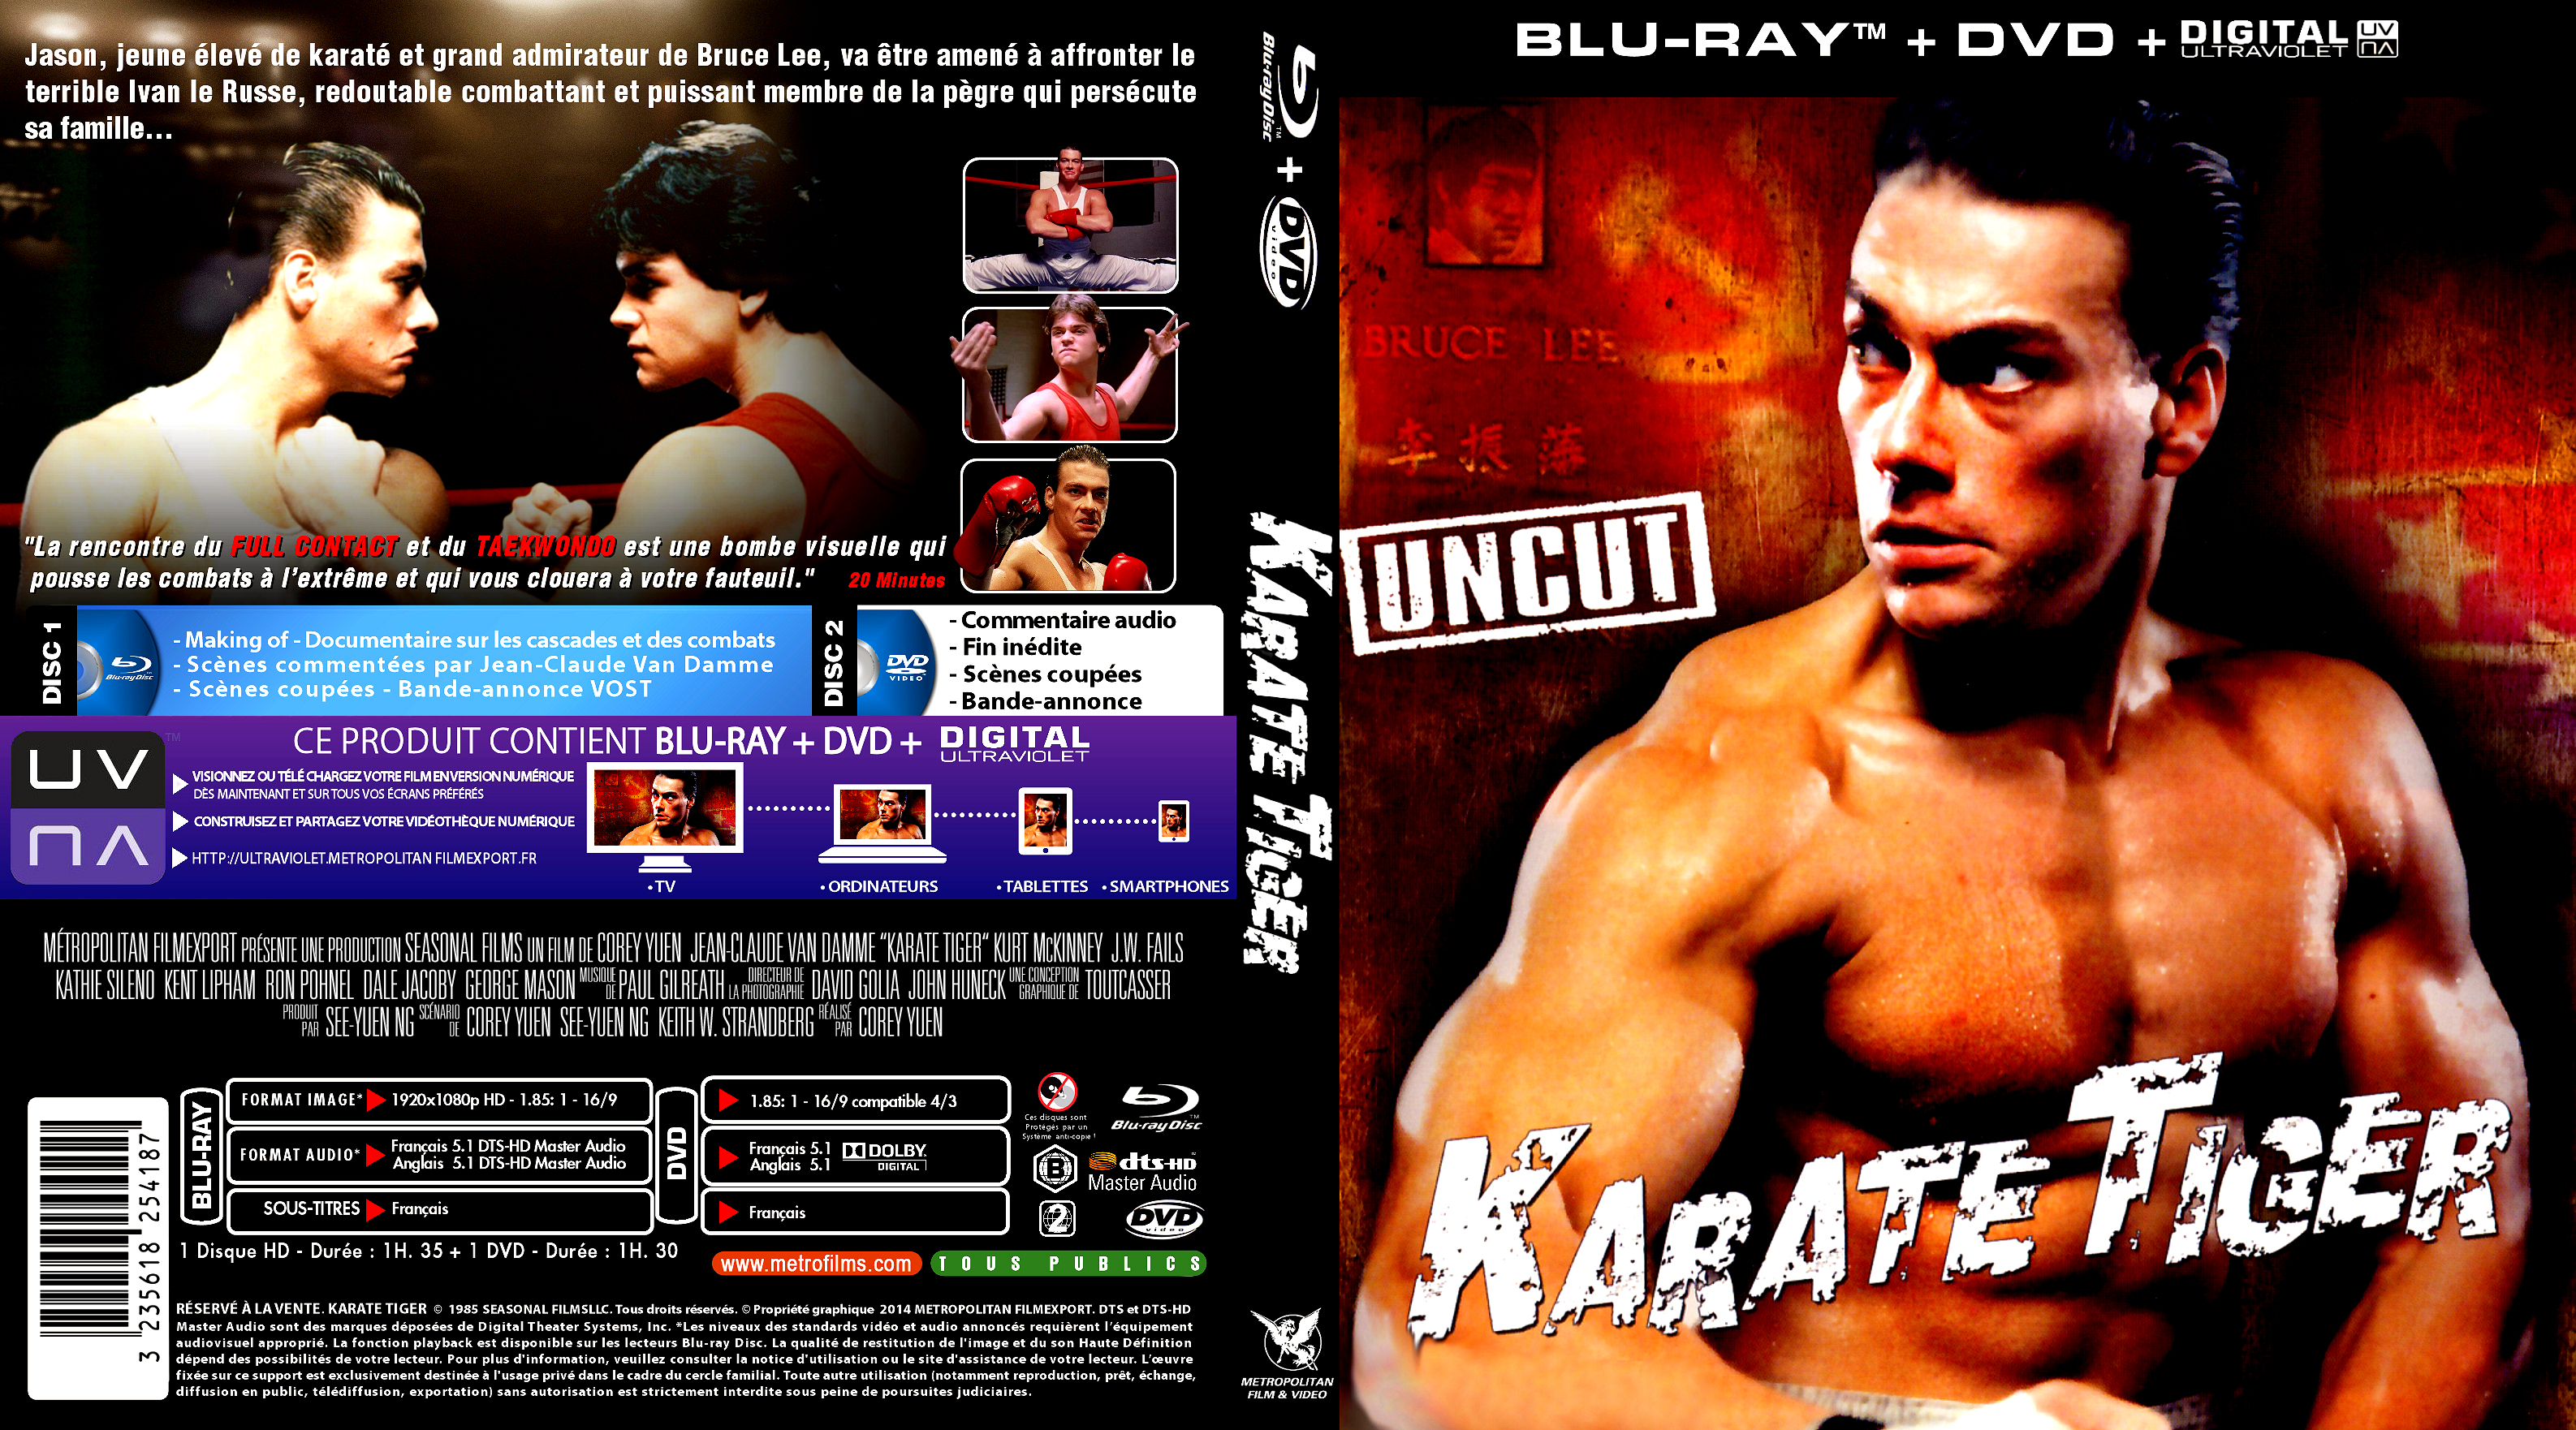 Jaquette DVD Karat tiger custom (BLU-RAY) 2